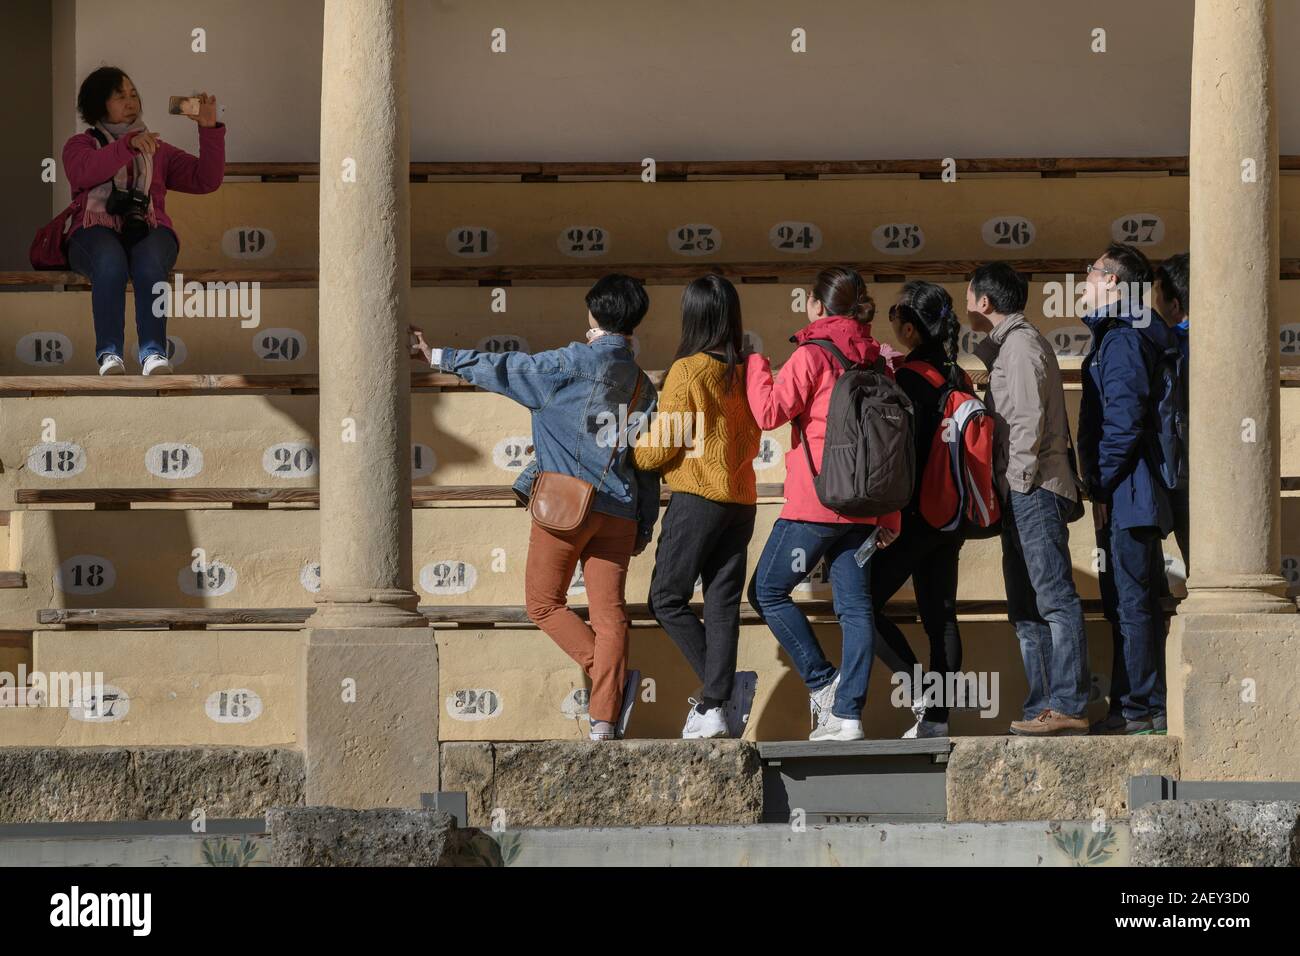 Tourists at a stadium, Ronda, Malaga, Andalusia, Spain Stock Photo